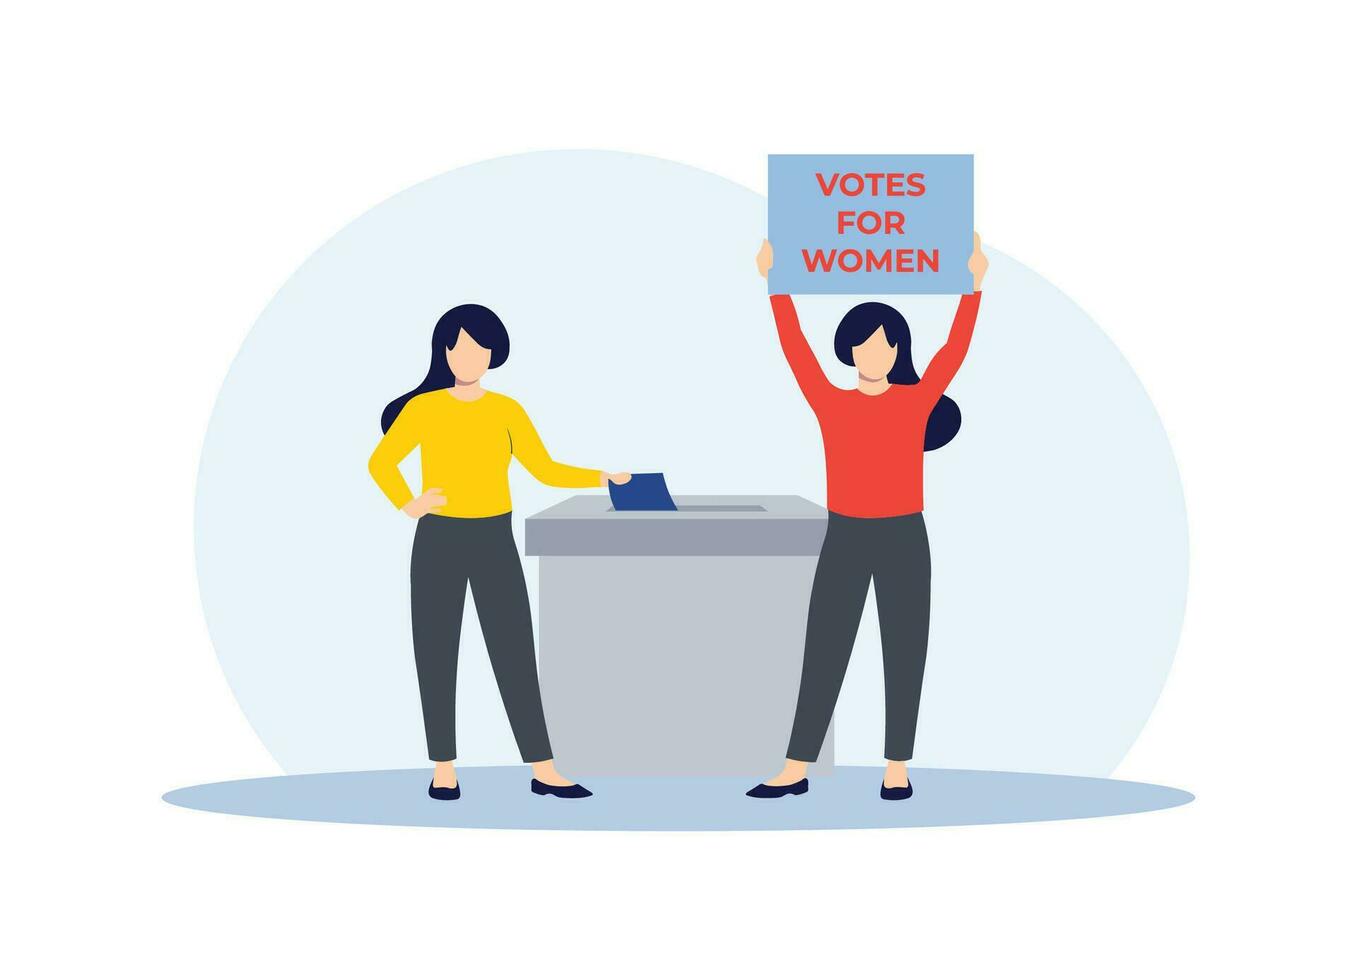 persone mettere il voto scrutinio nel il scrutinio scatola, votazione o sondaggio concetto, elezione concetto, voti per donne vettore